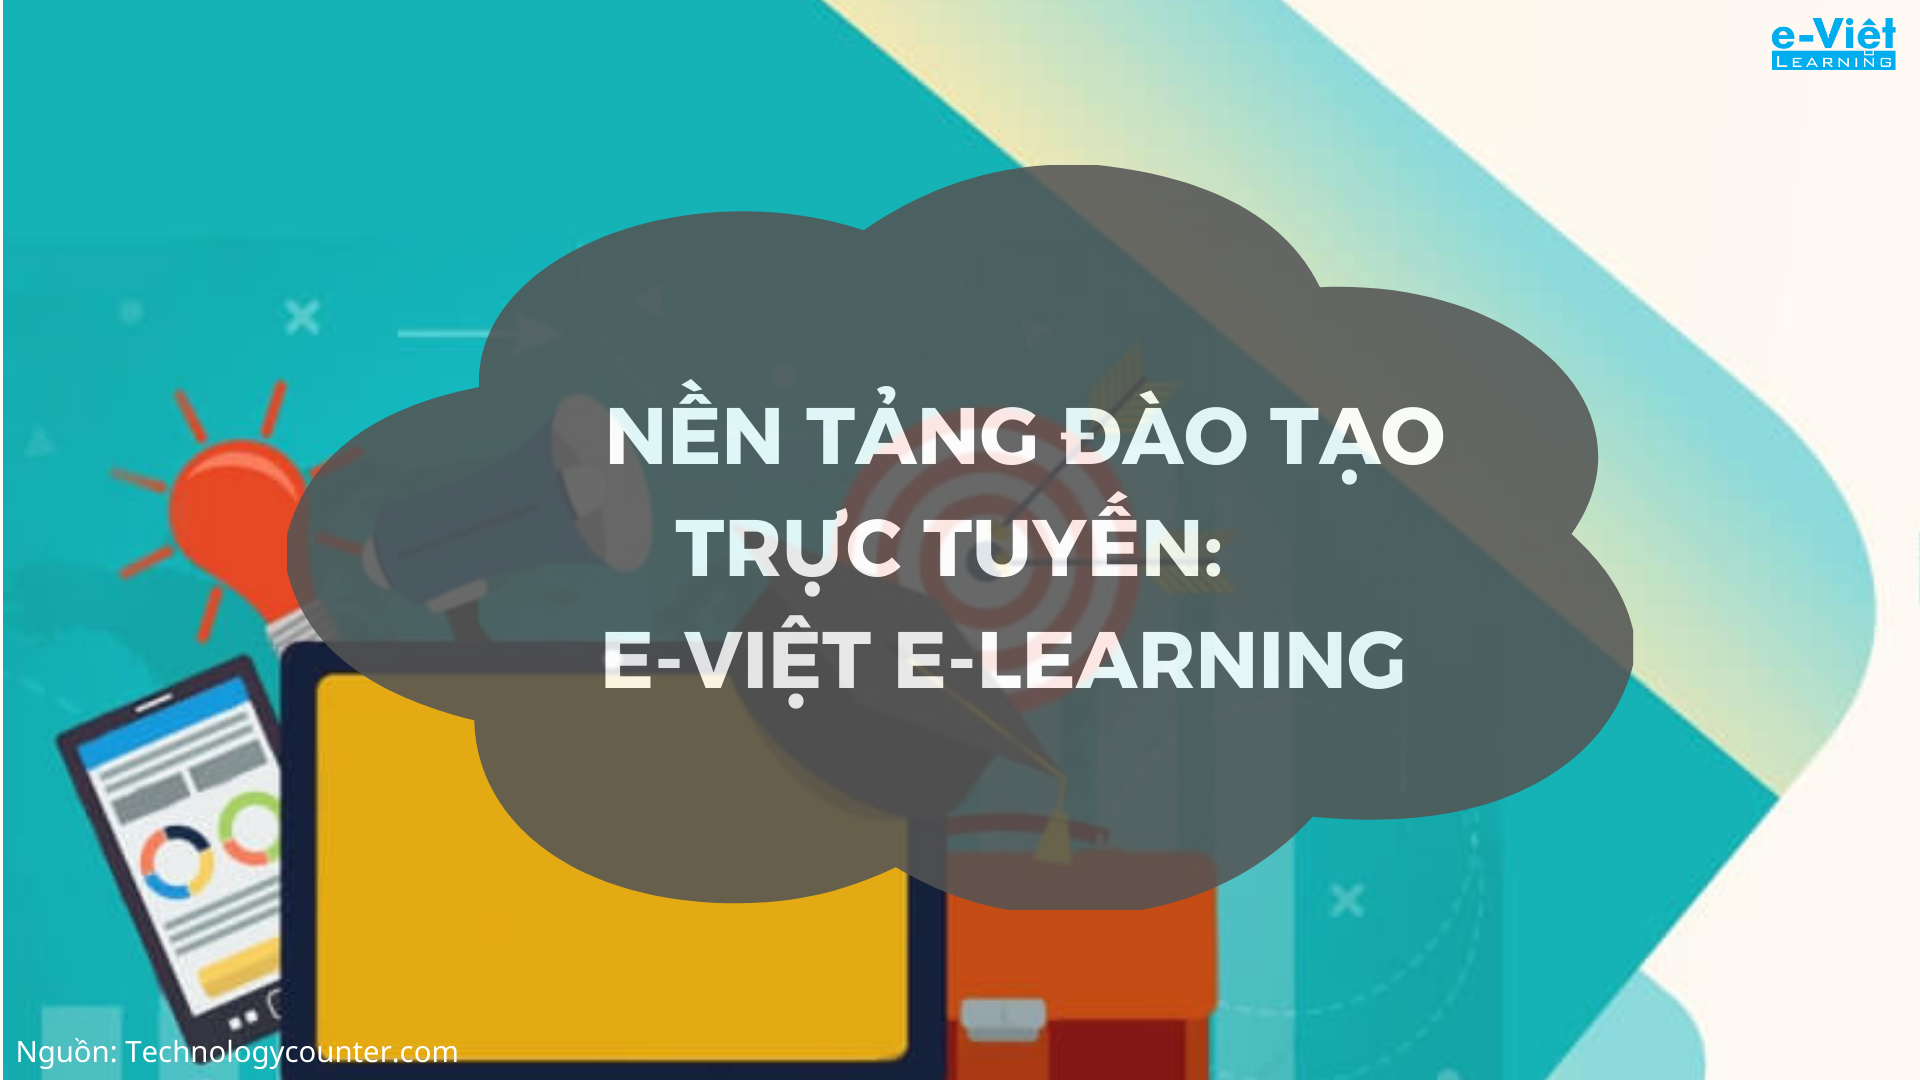 Nền tảng đào tạo trực tuyến: E-Việt E-Learning